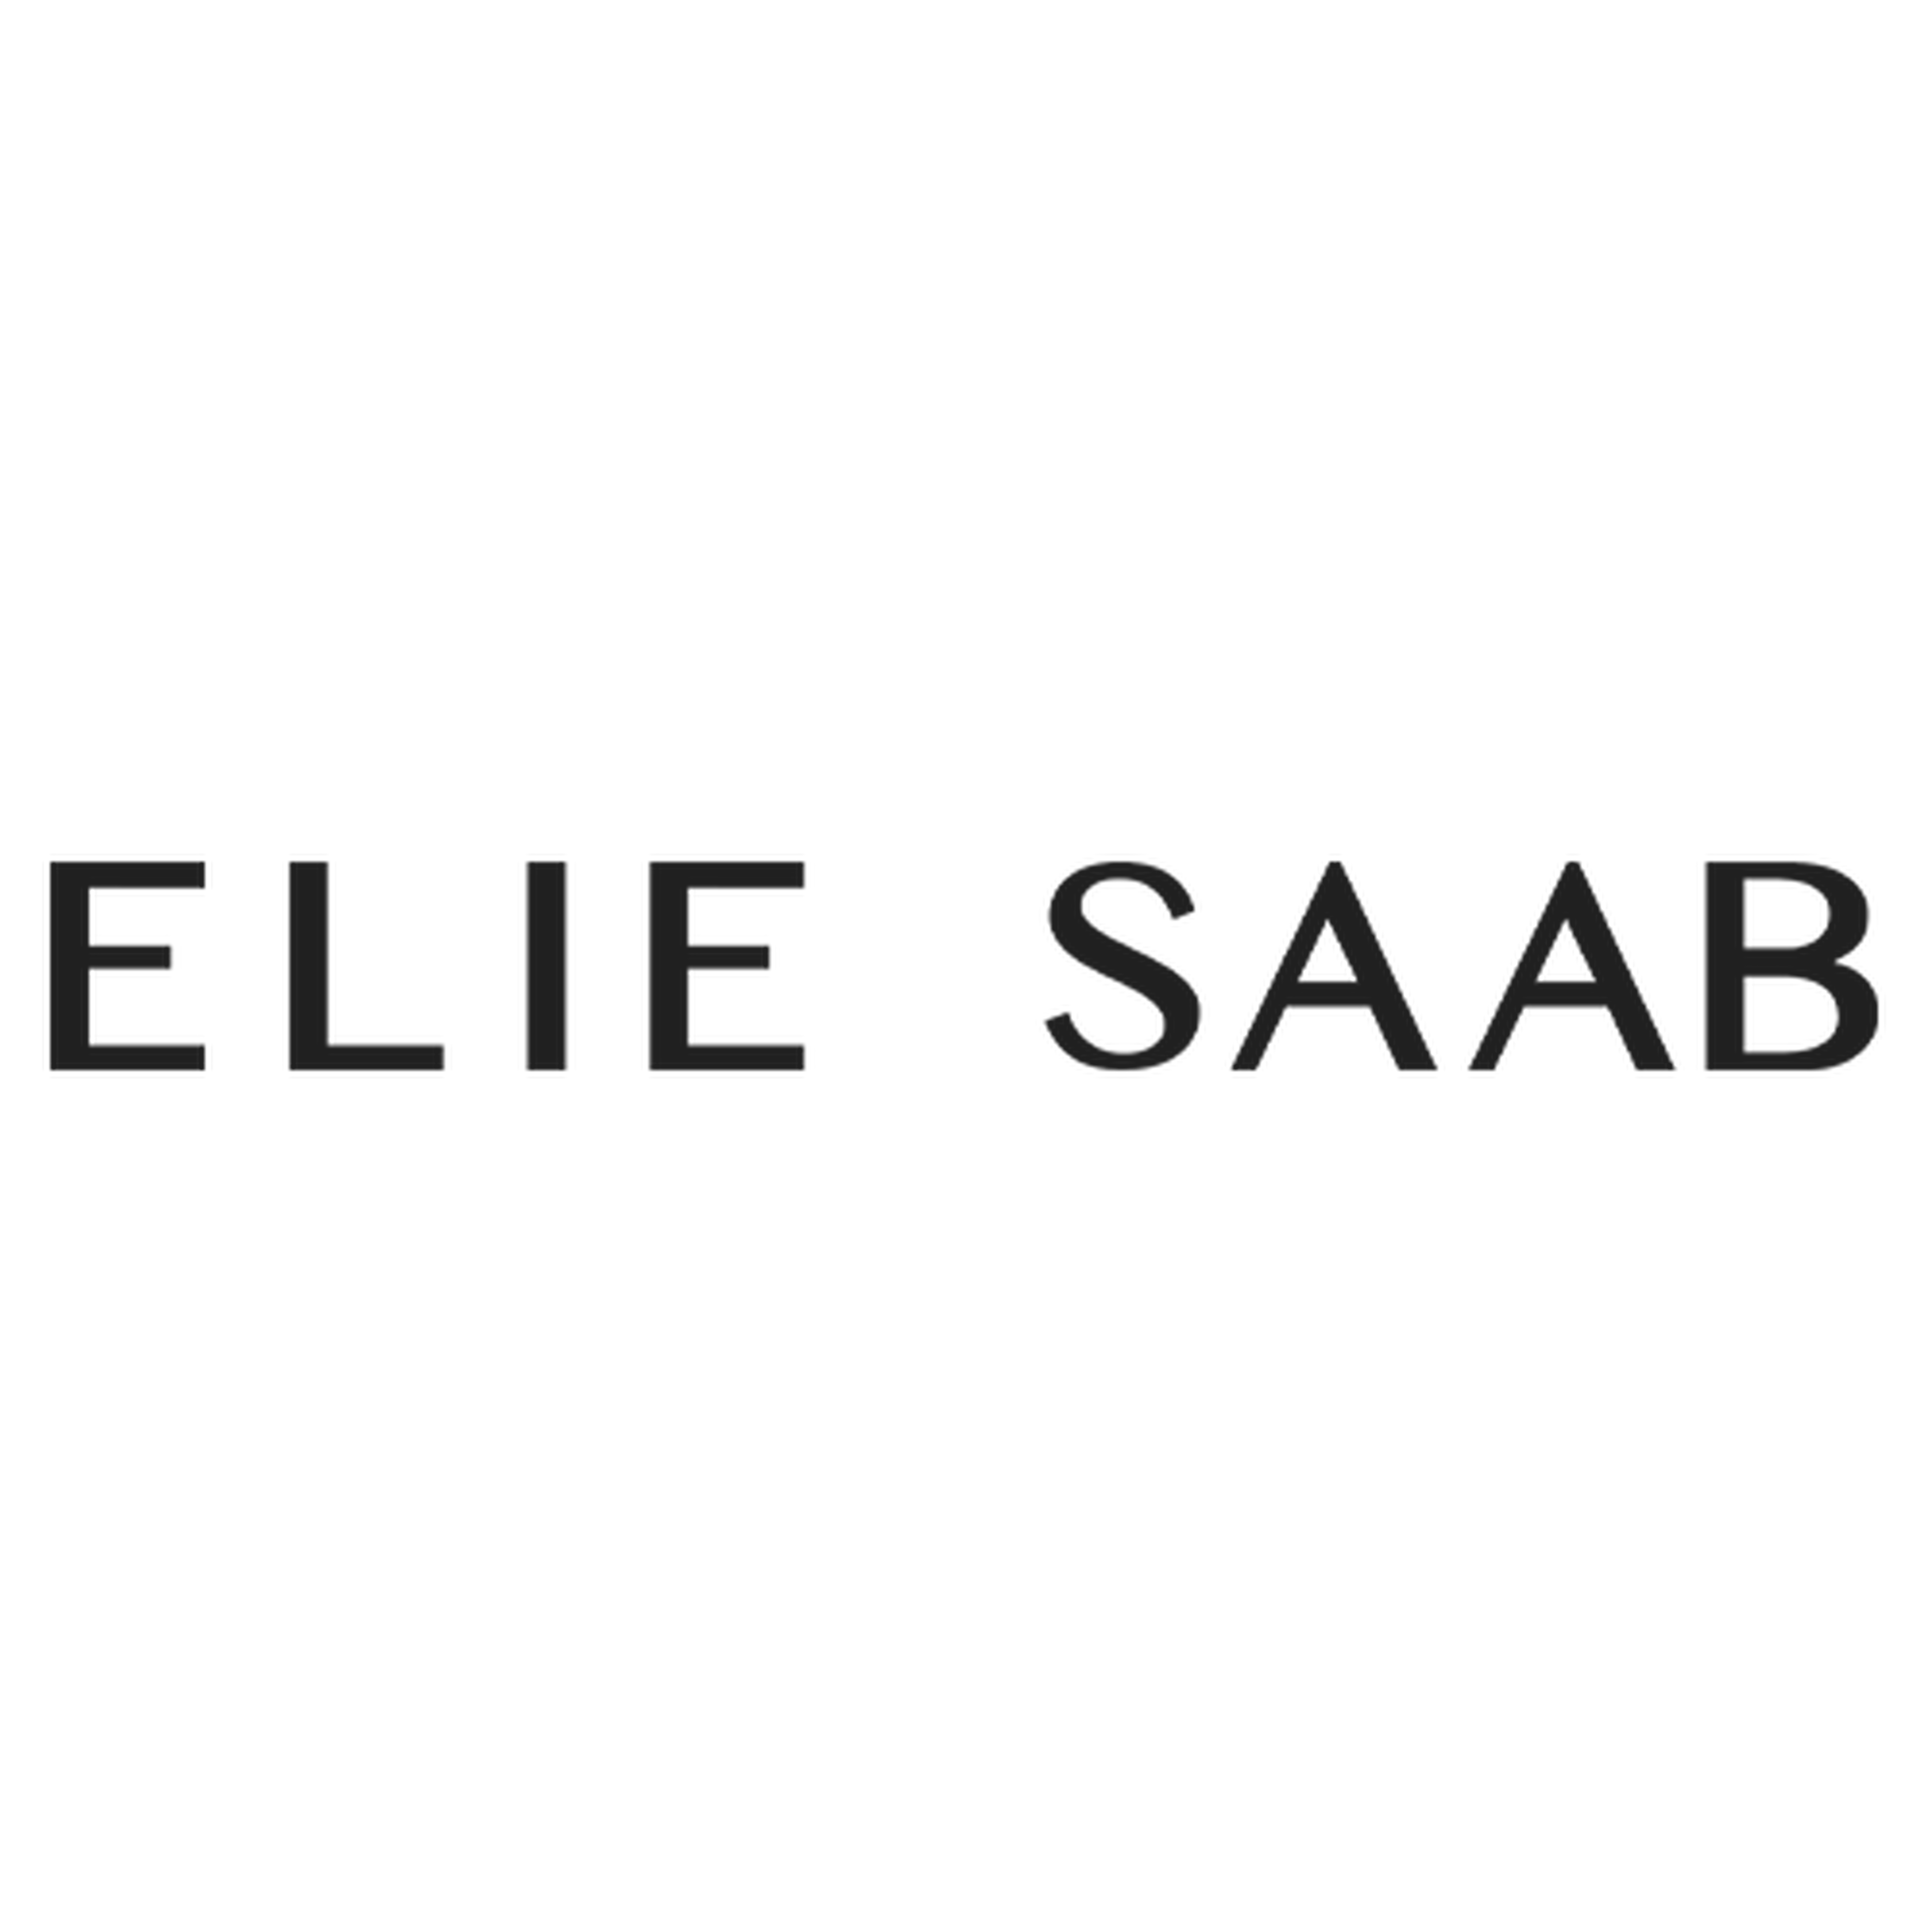 Elie Saab logotype